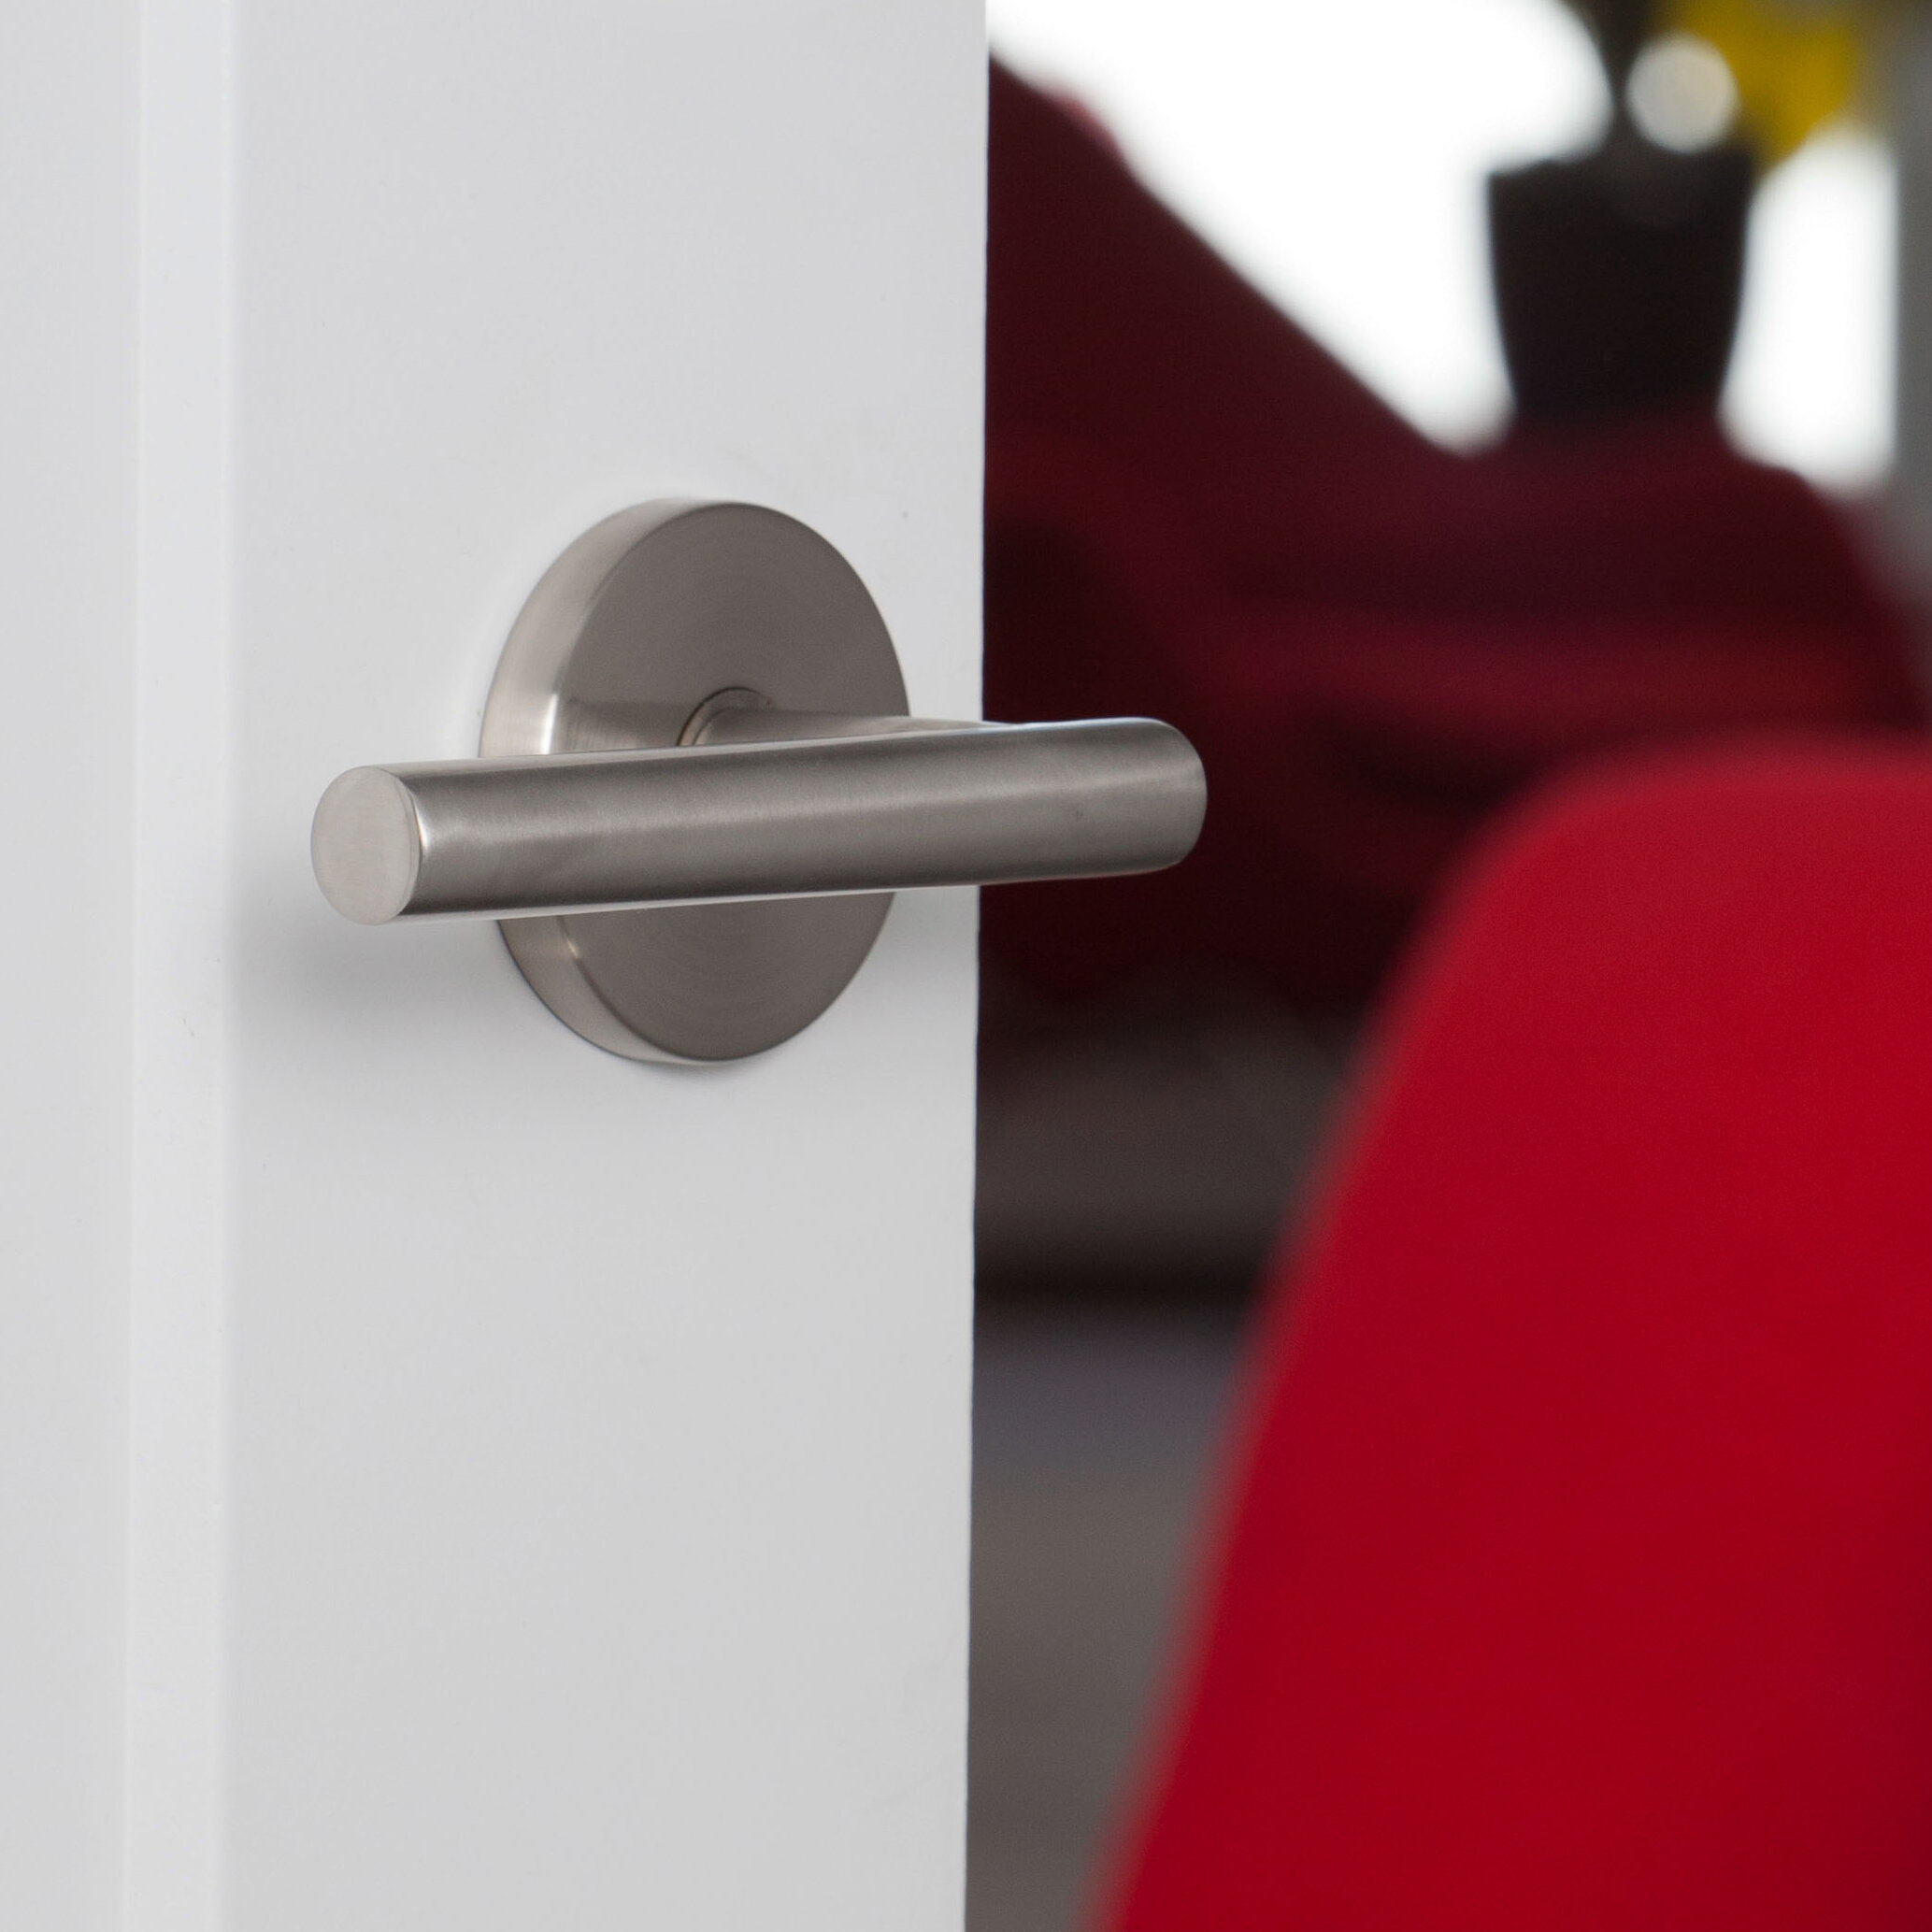 Sure-Loc Door Hardware - Juneau Modern Lever Handle